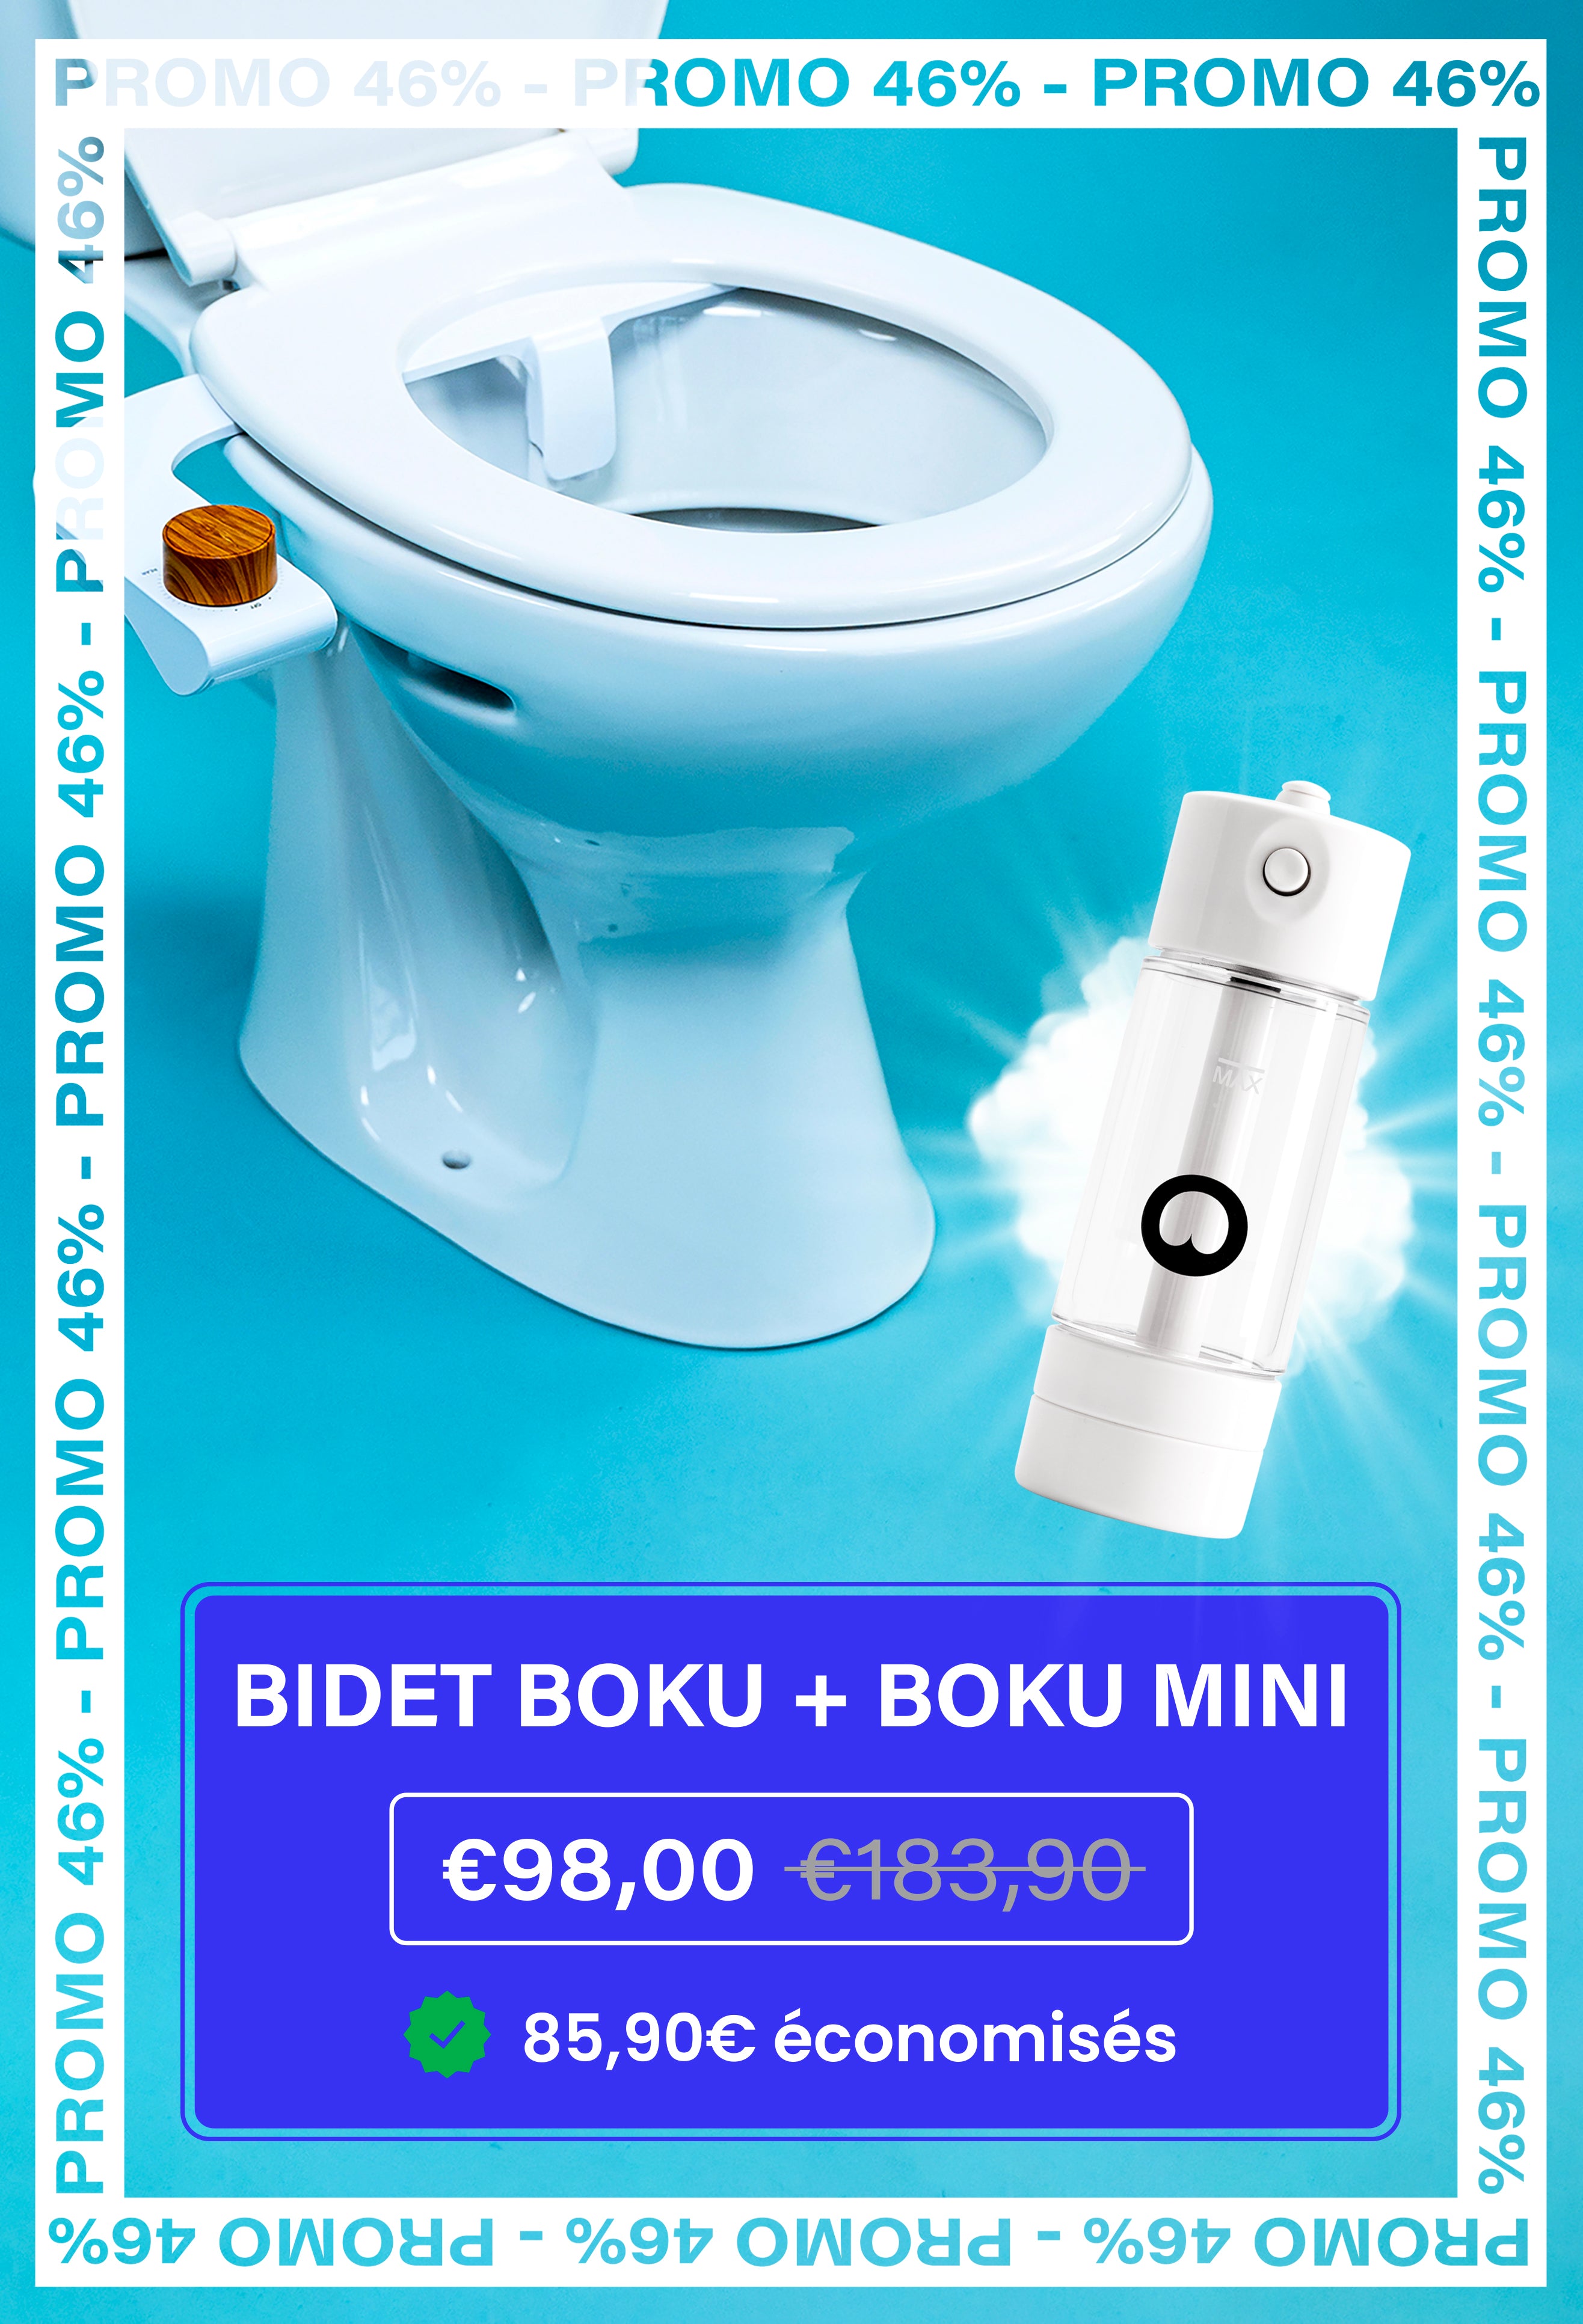 Abattant WC japonais bidet cuvette sans papier toilette eau chaude froide